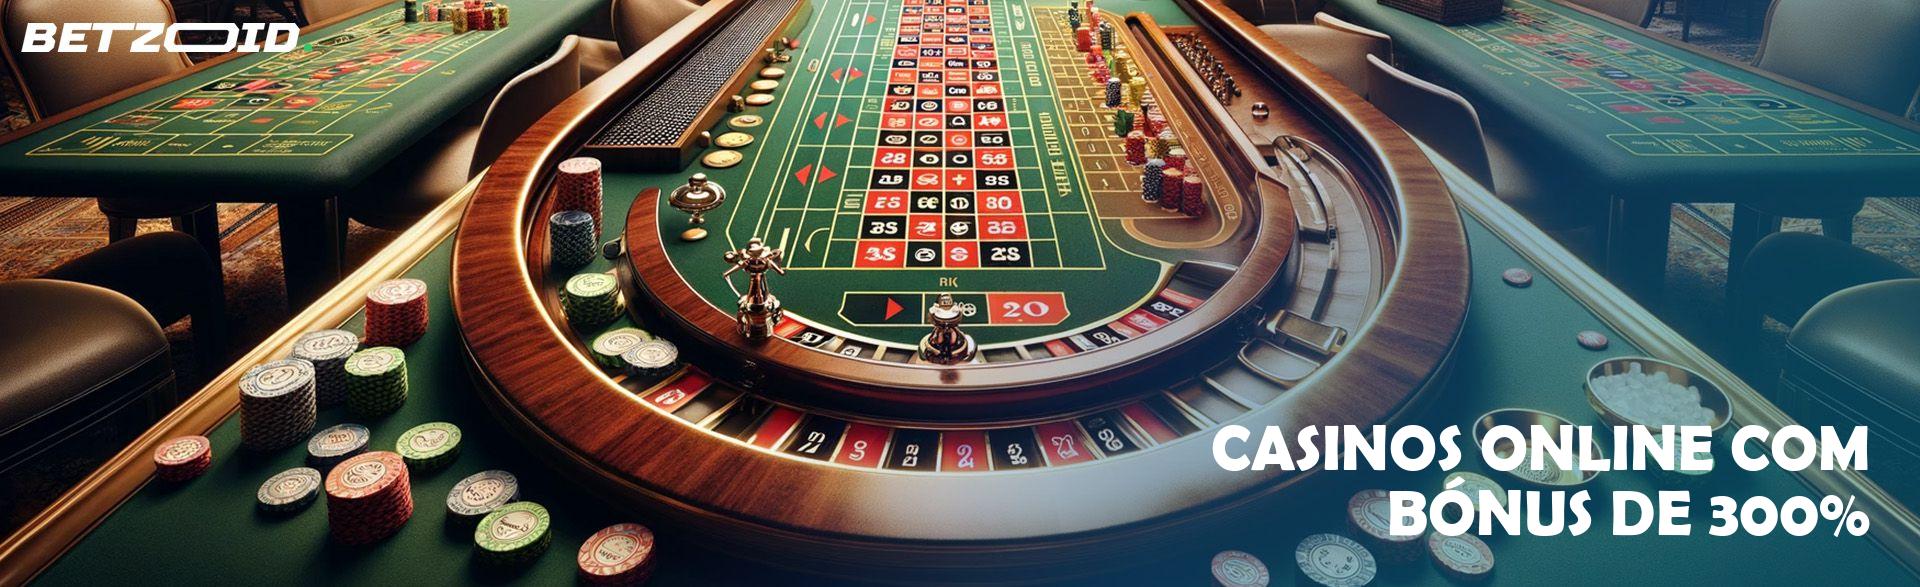 Casinos Online com Bónus de 300%.